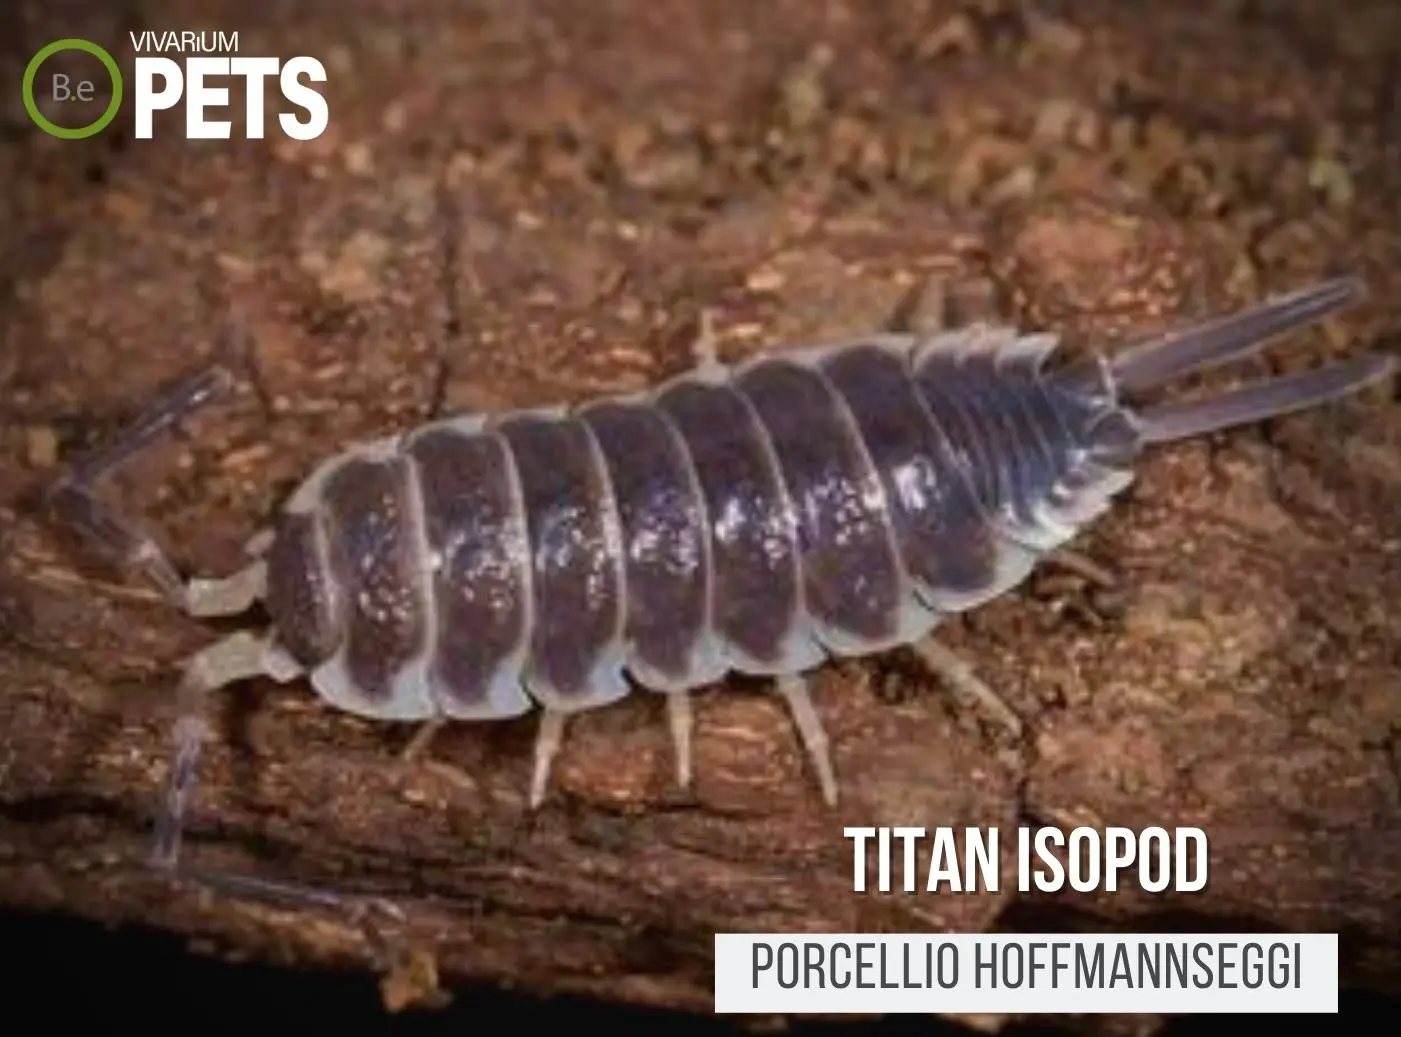 Porcellio hoffmannseggi "Titan Isopod" Complete Care Guide!